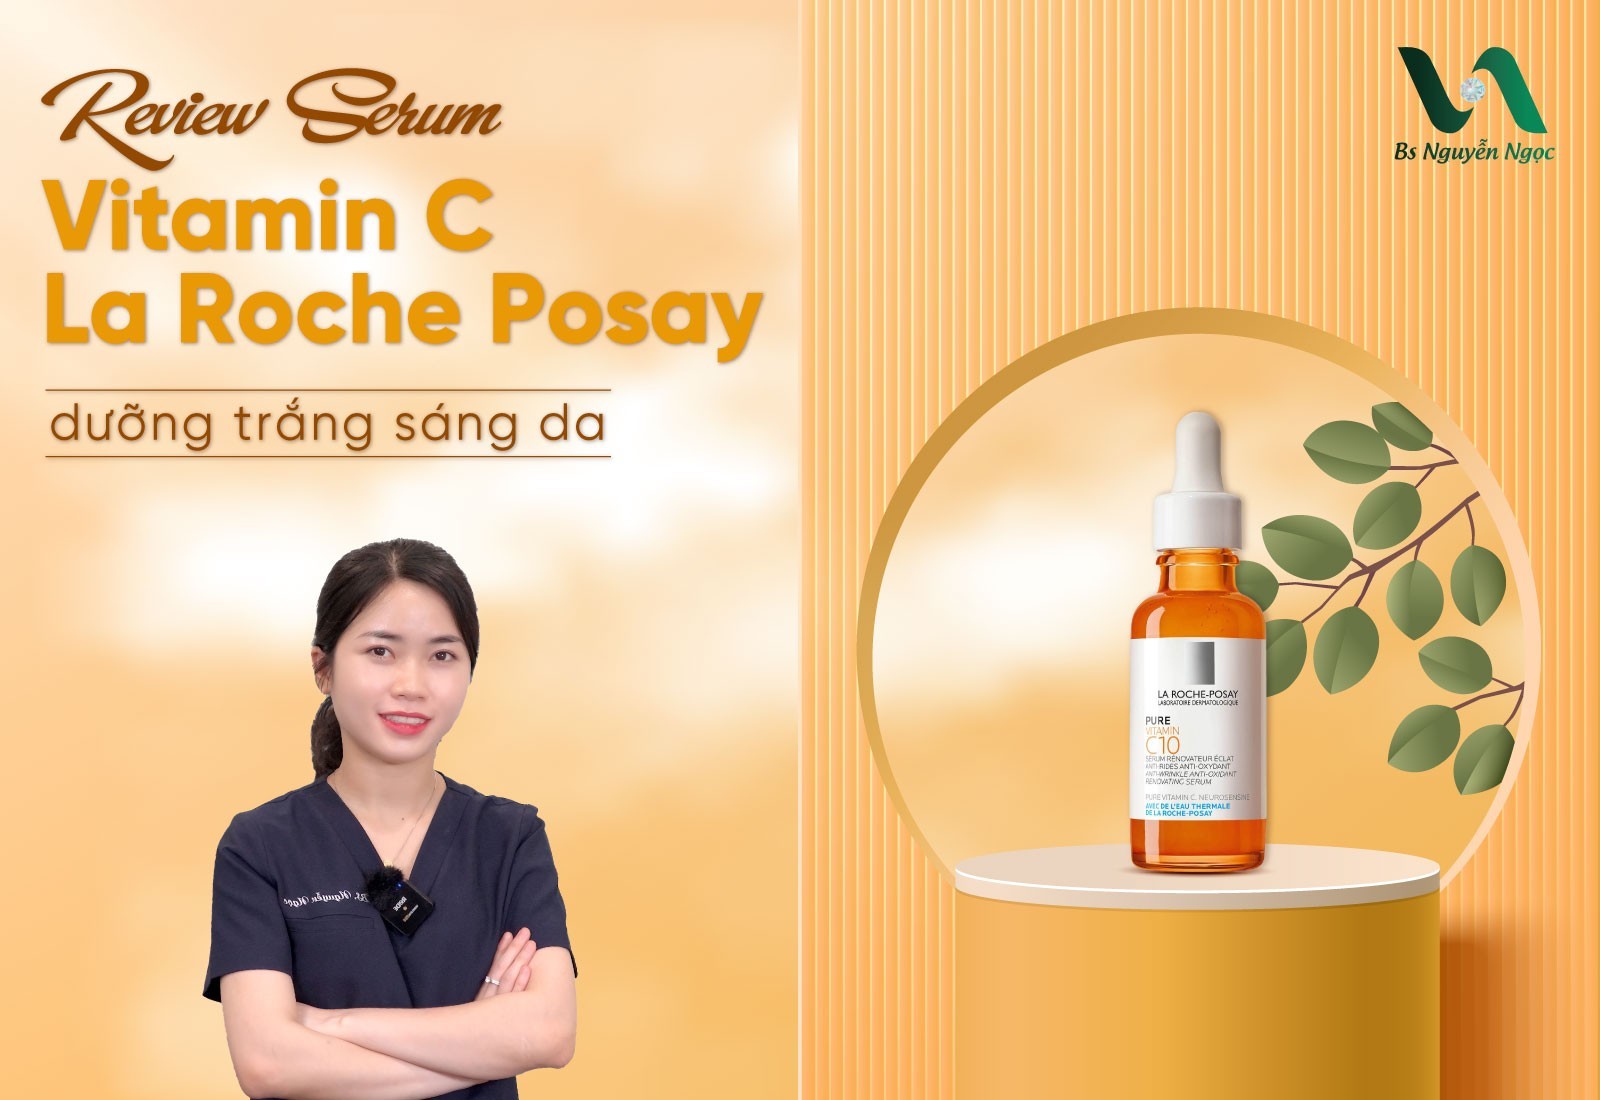 Review Serum Vitamin C La Roche Posay dưỡng trắng sáng da